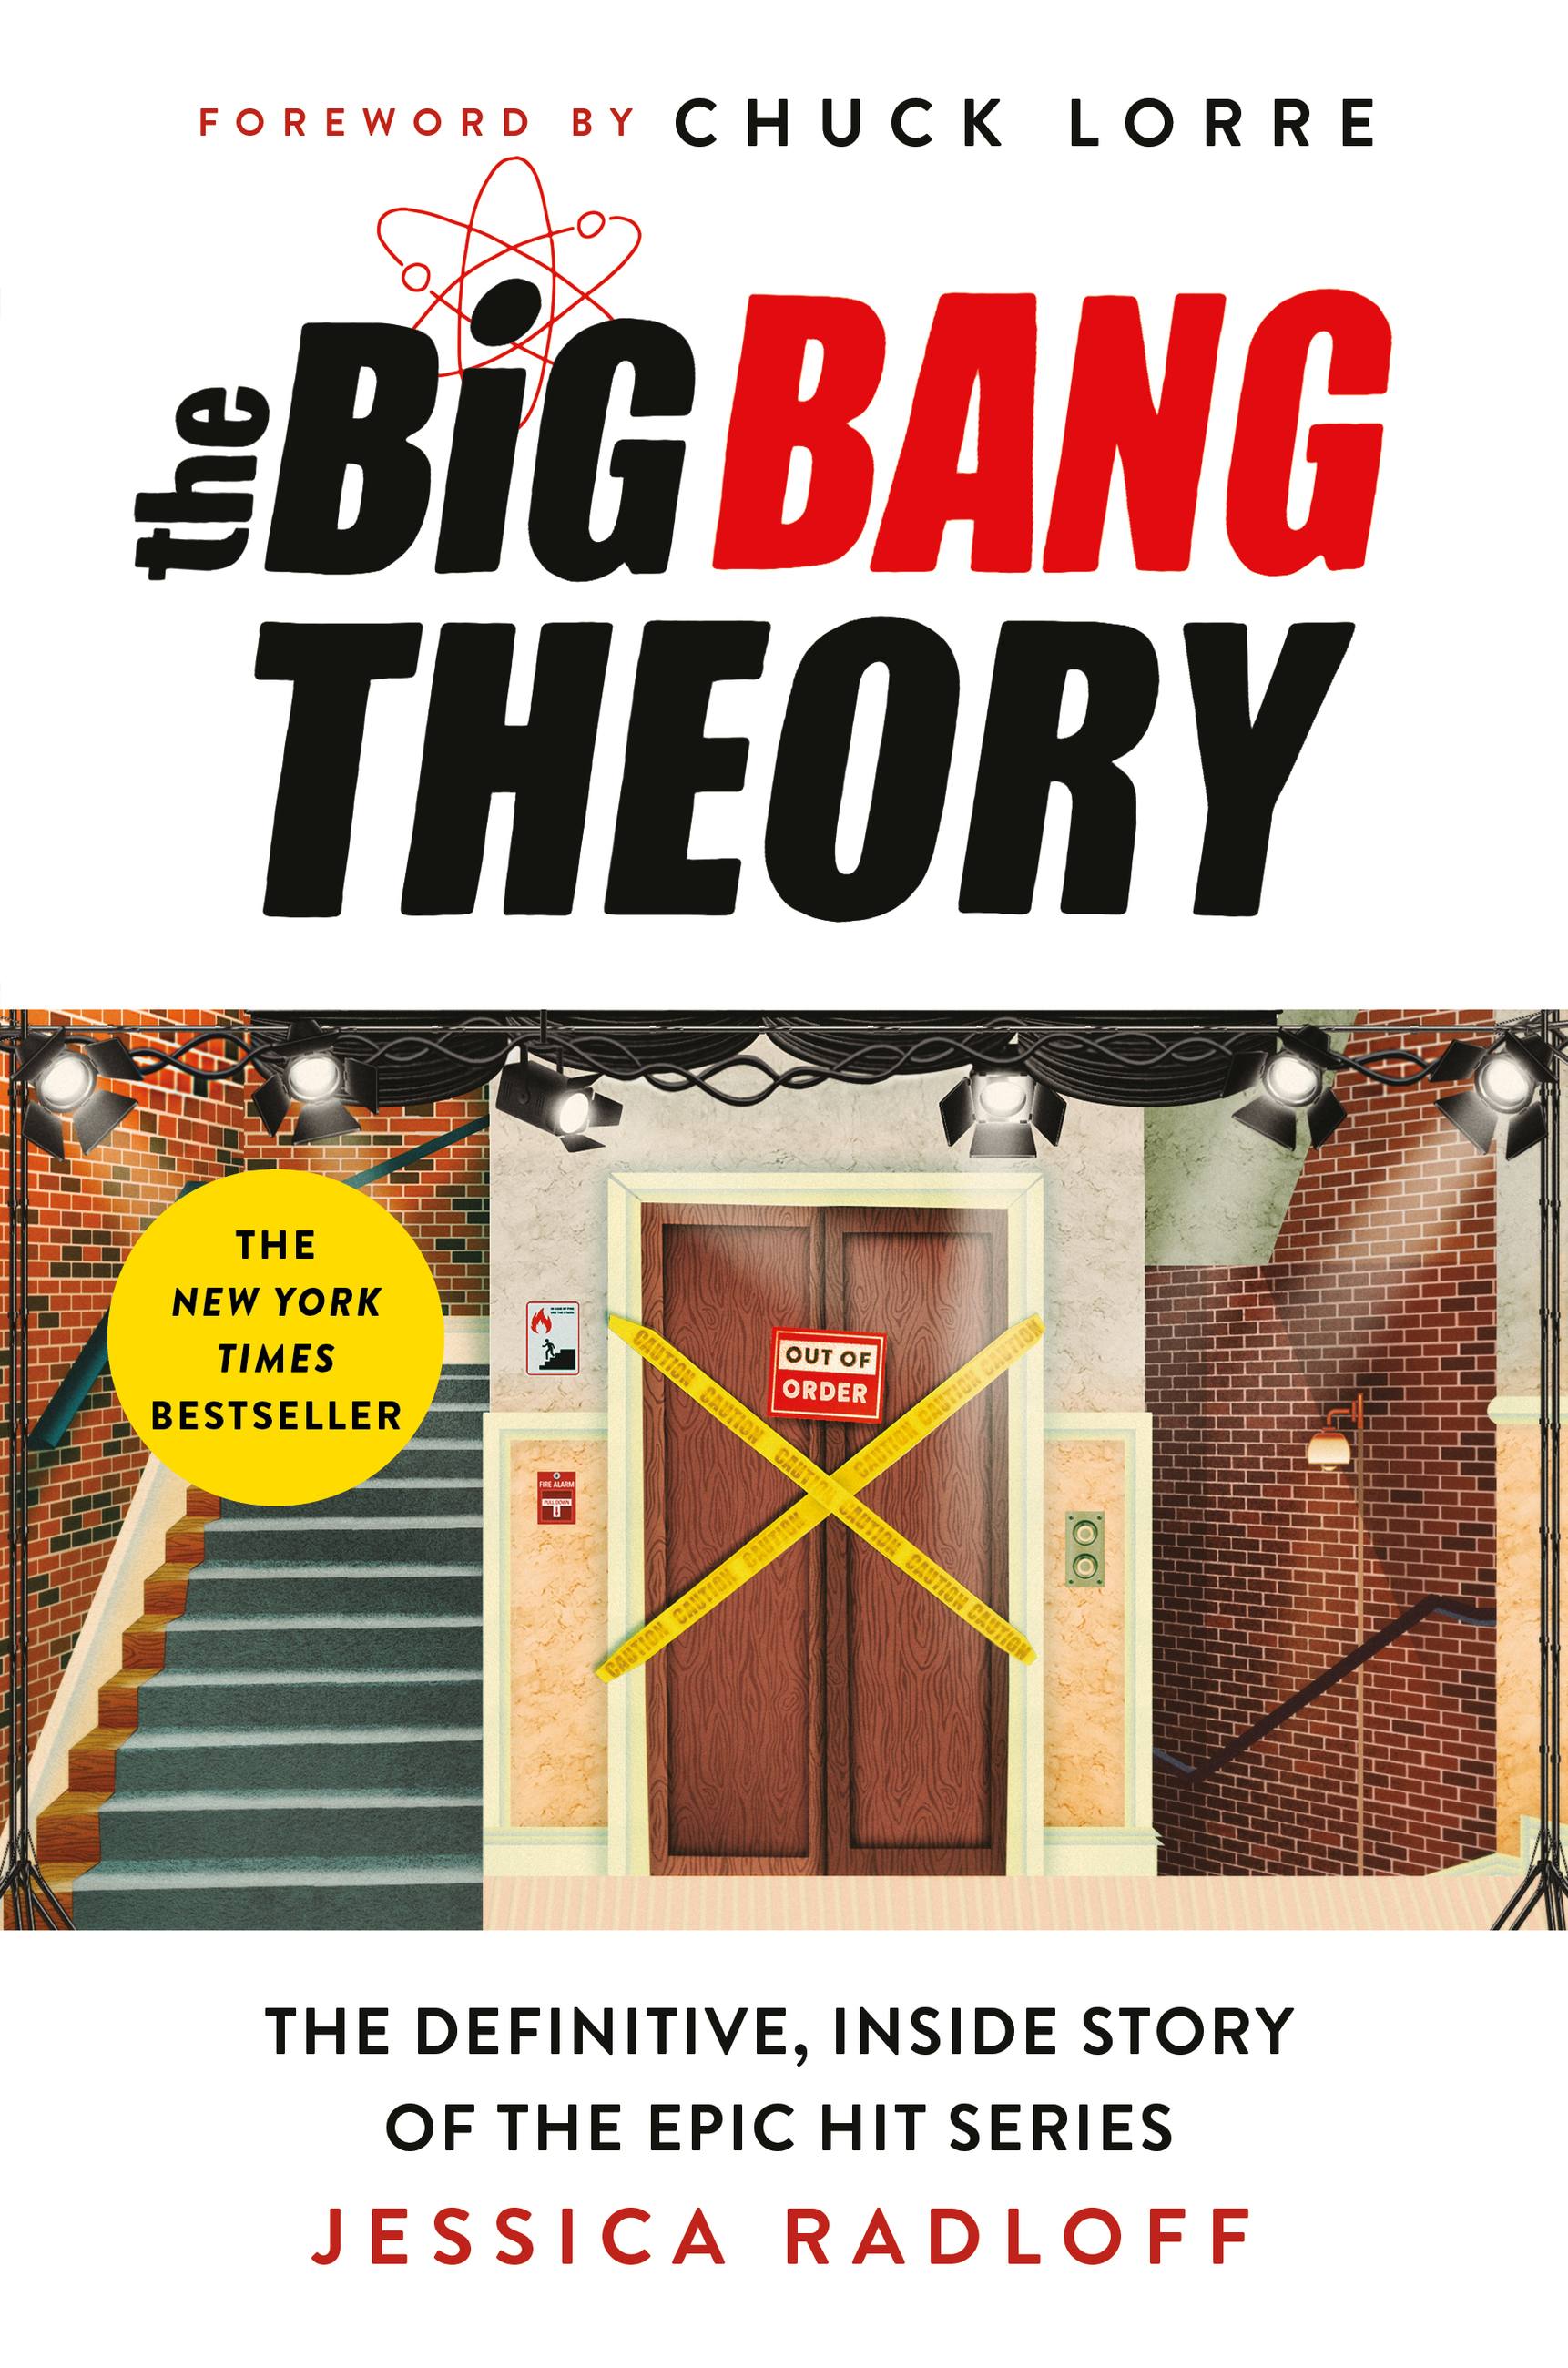 the big bang theory opening